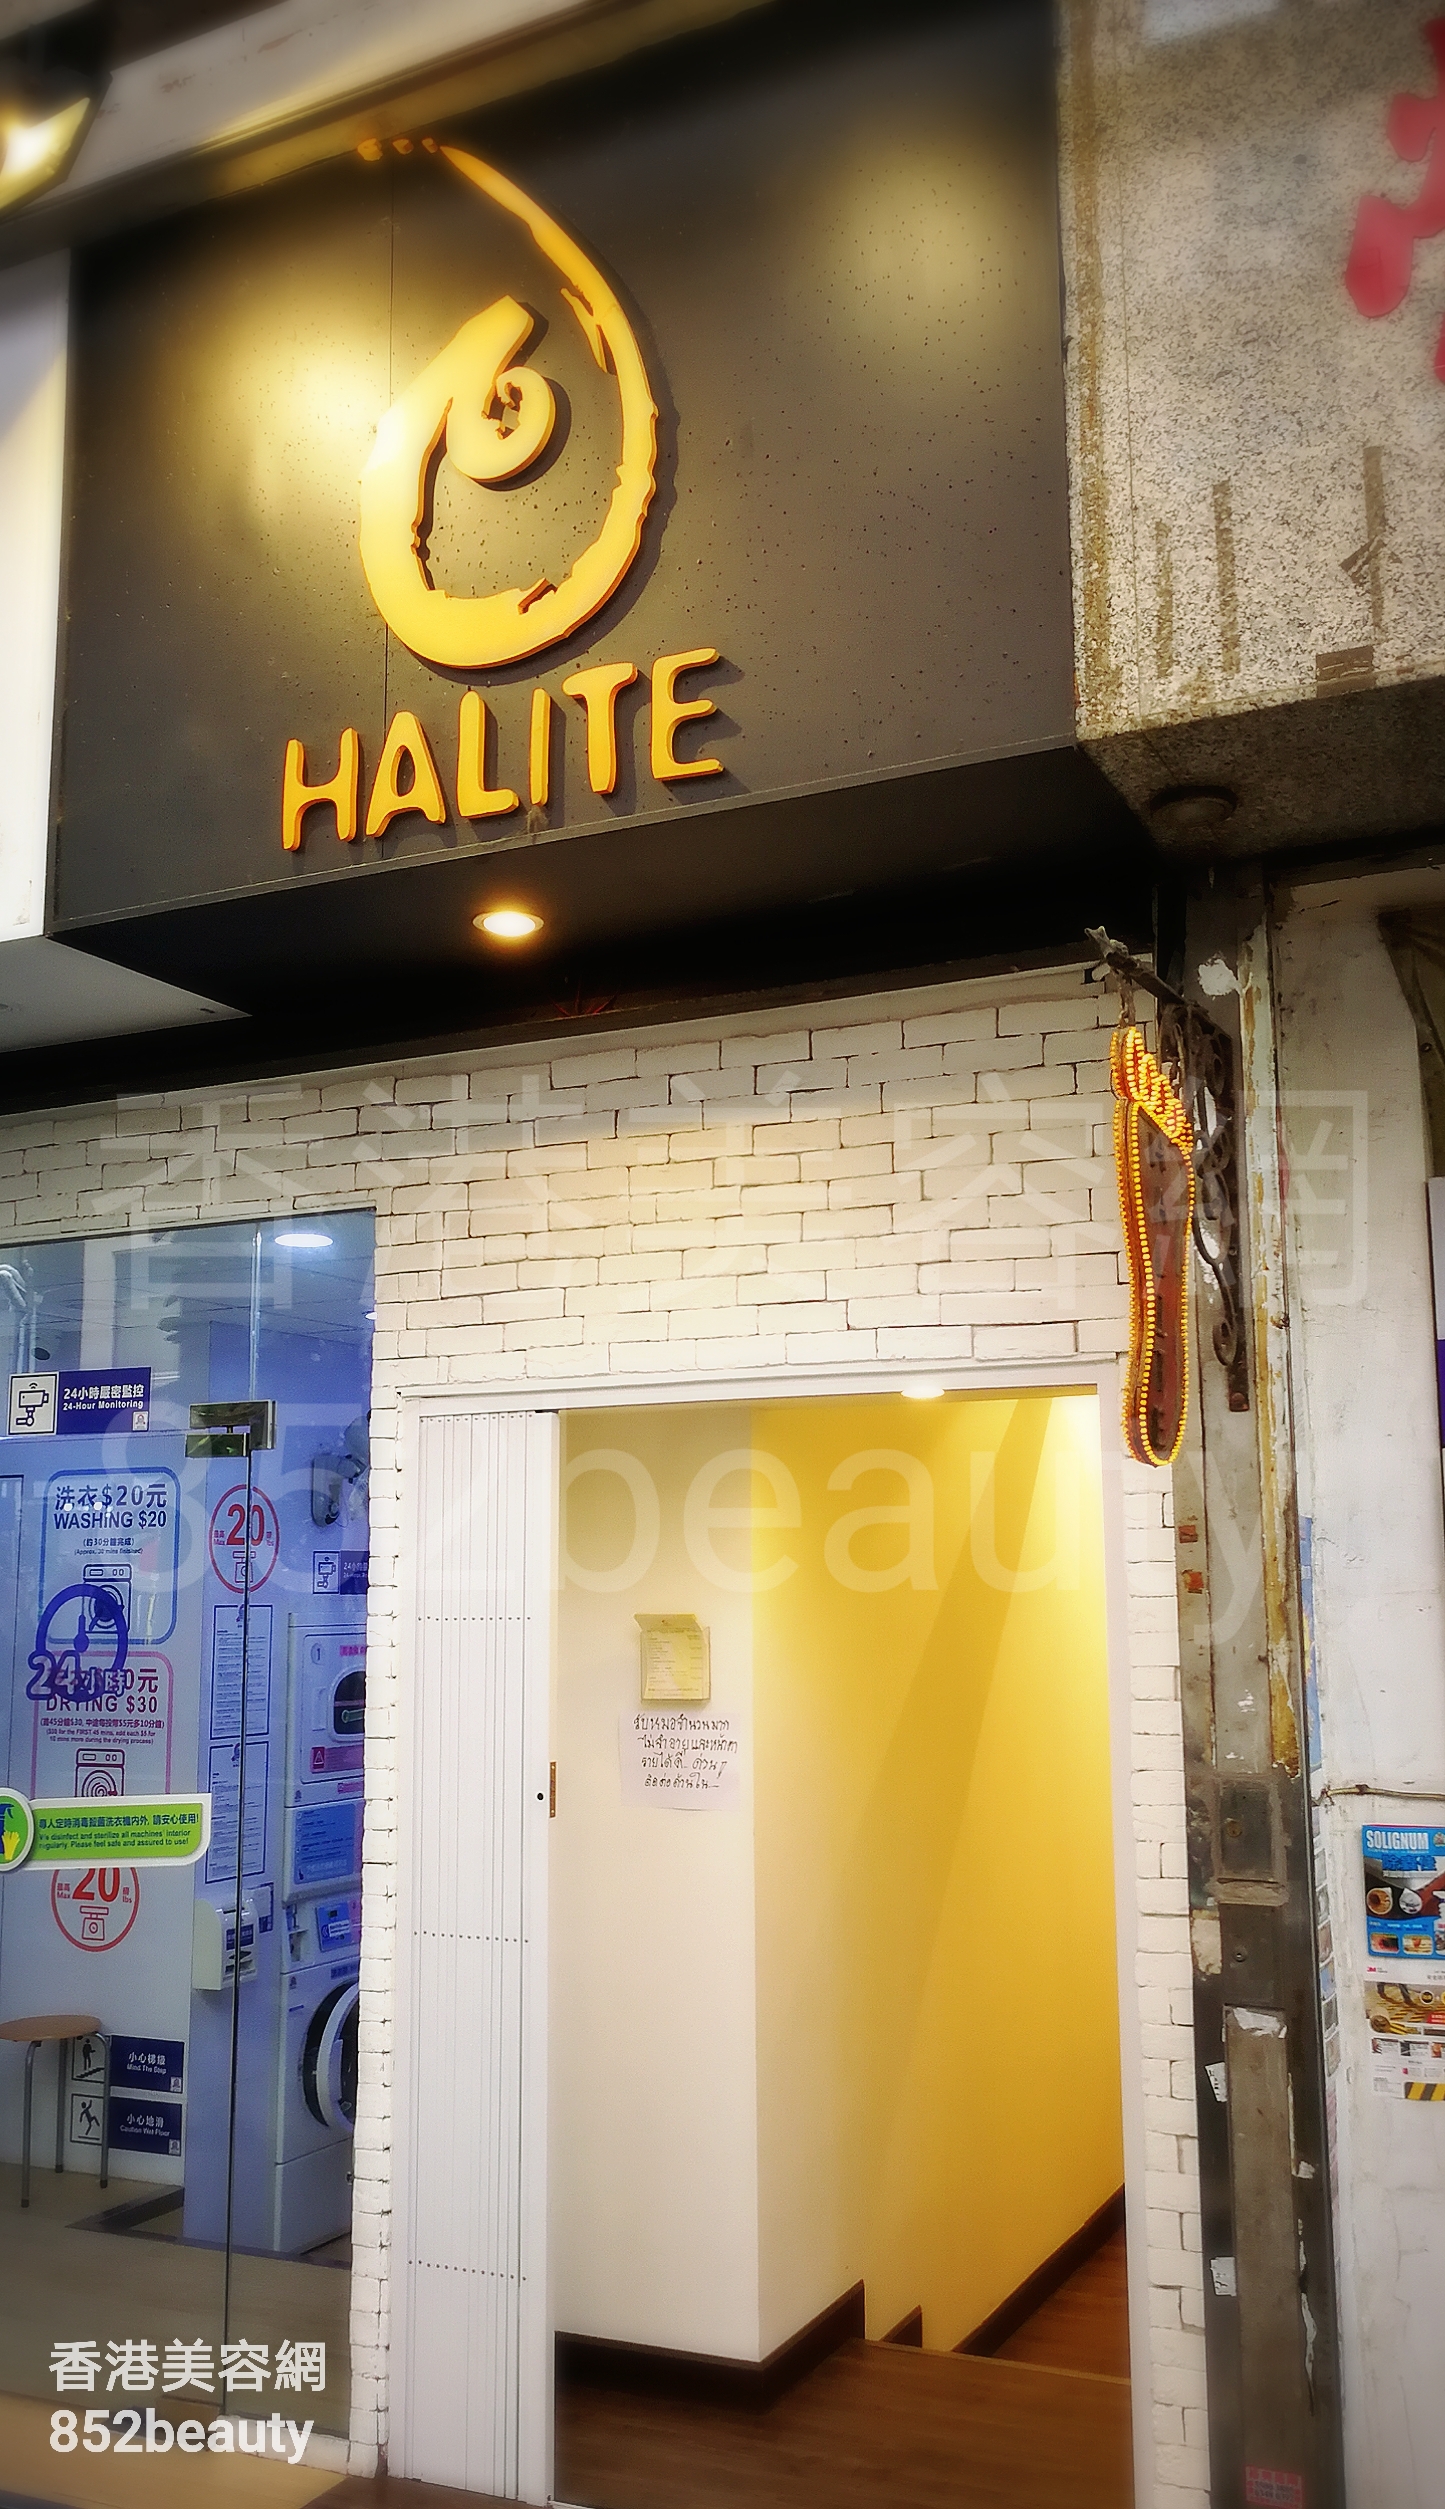 香港美容網 Hong Kong Beauty Salon 美容院 / 美容師: HALITE 鹽晶足浴 (西環店)